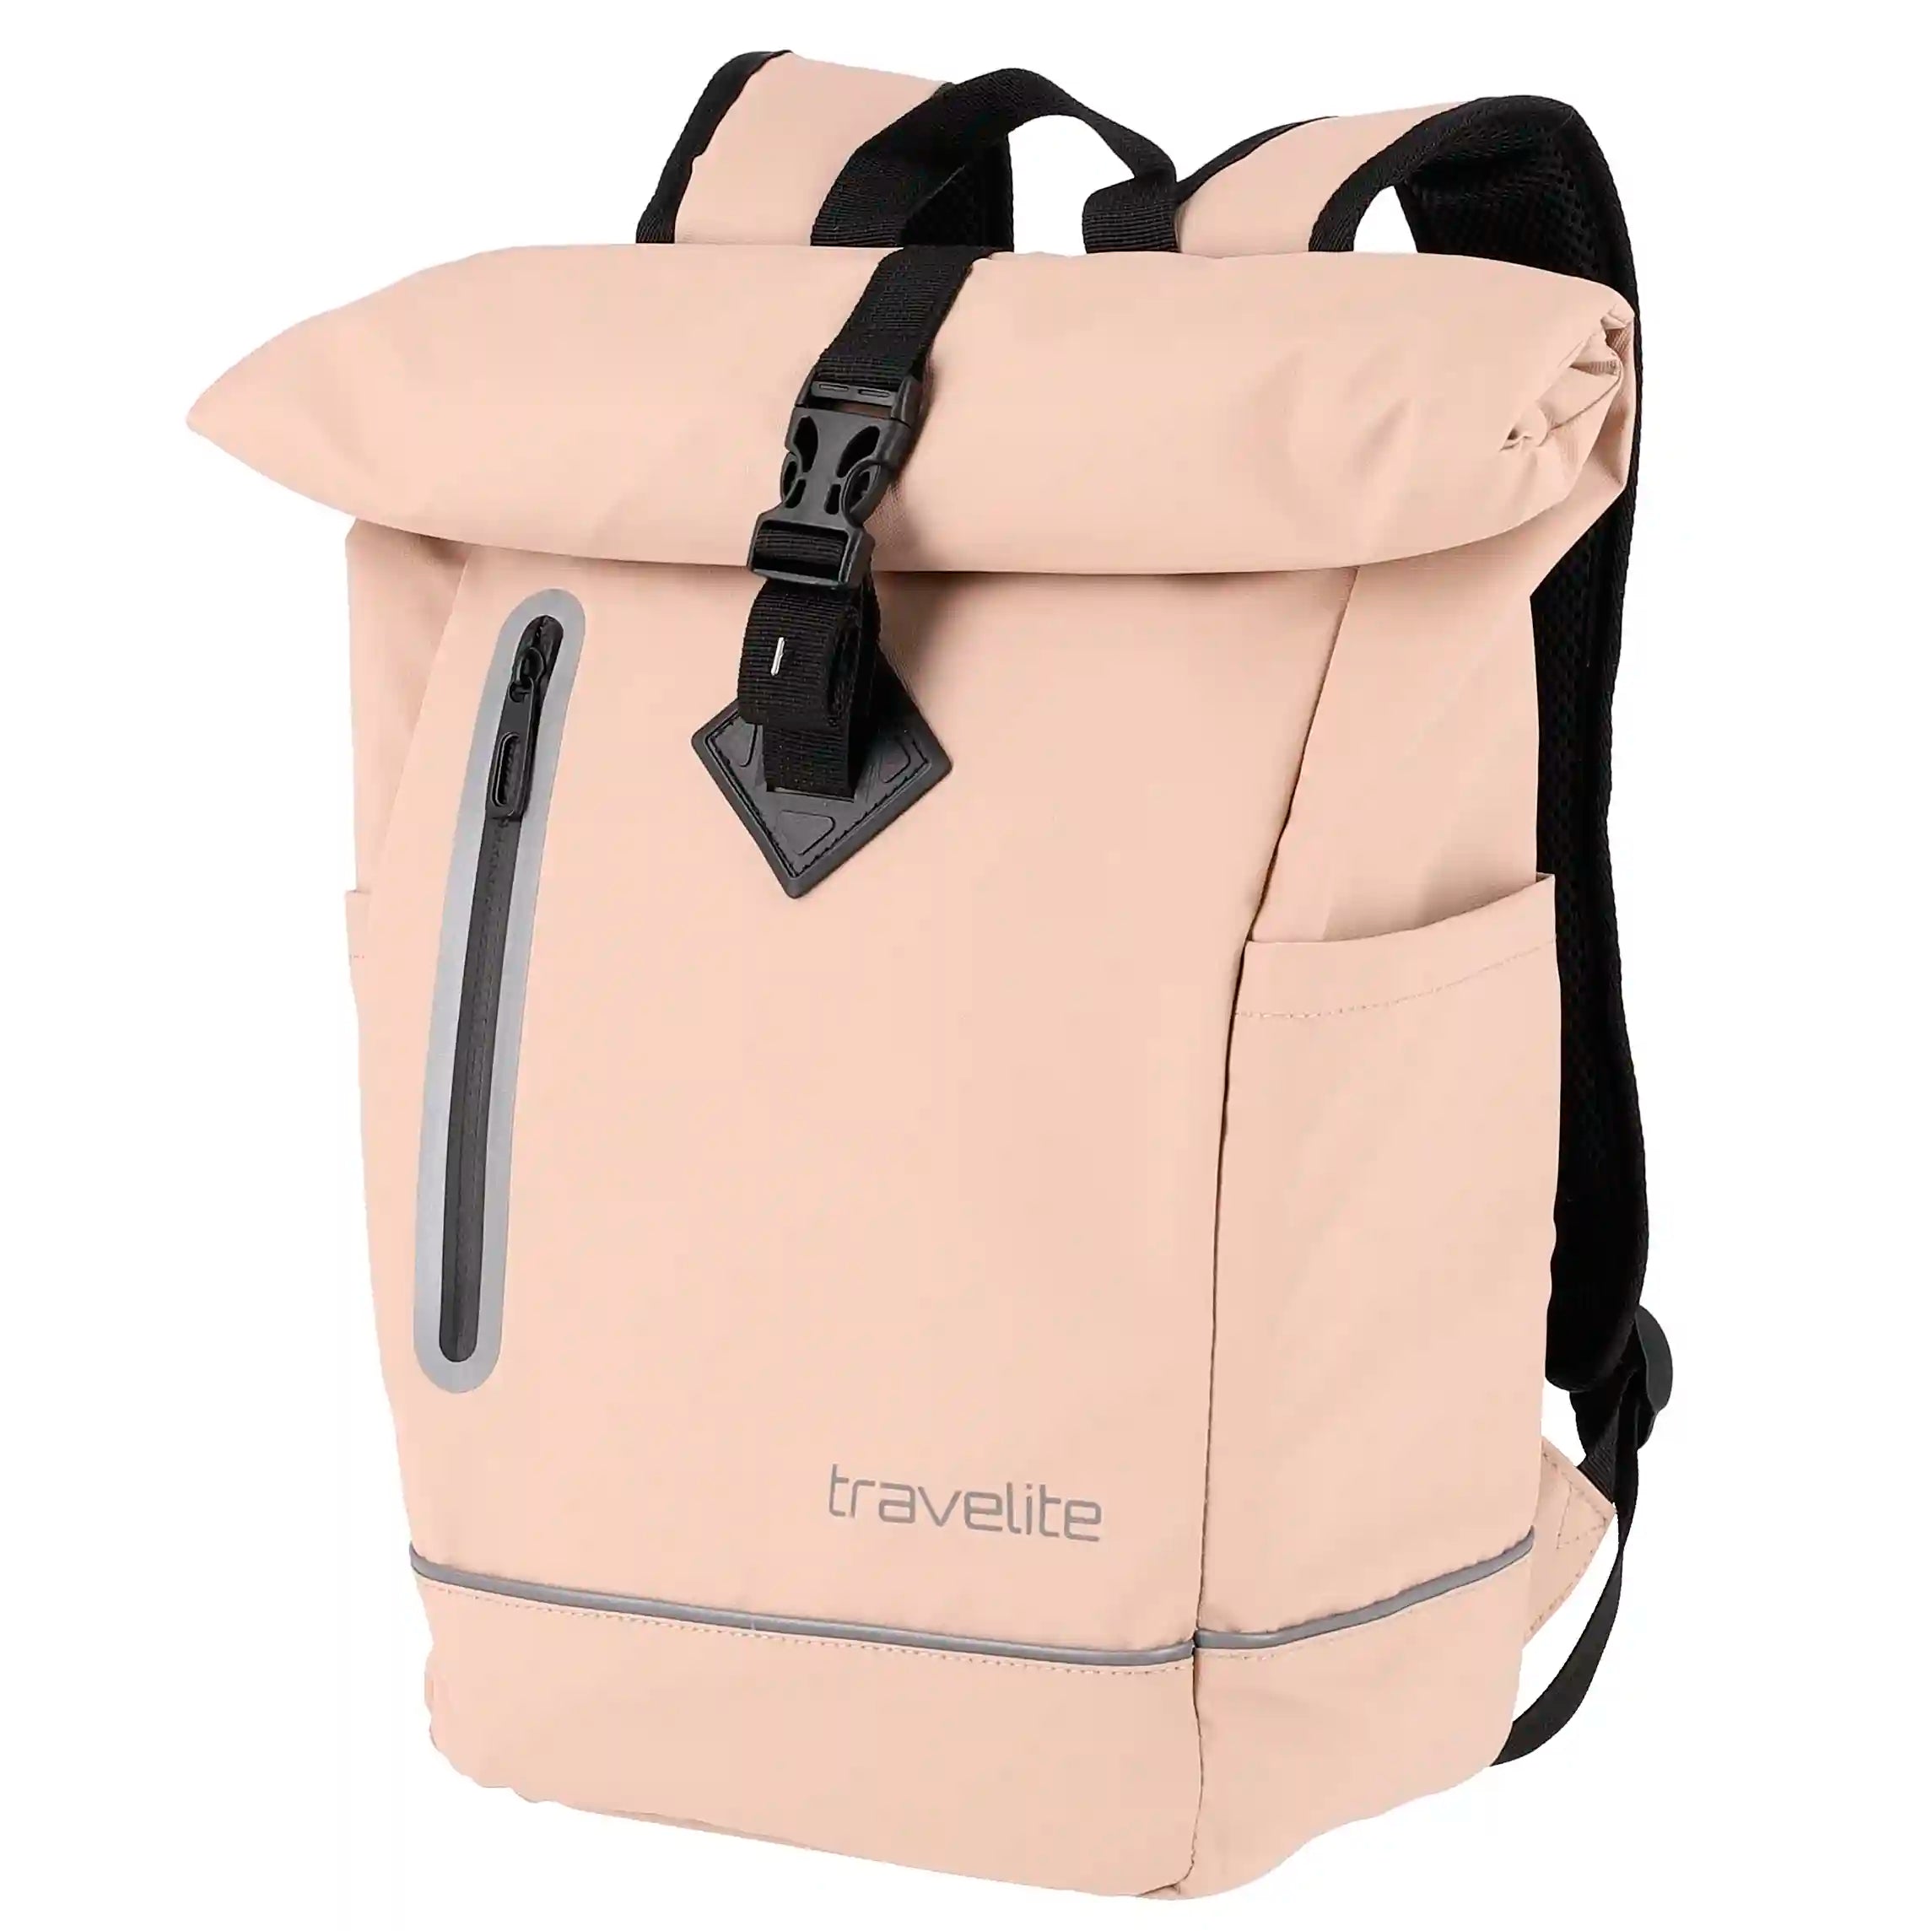 Bâche pour sac à dos enroulable Travelite Basics 48 cm - Marron clair